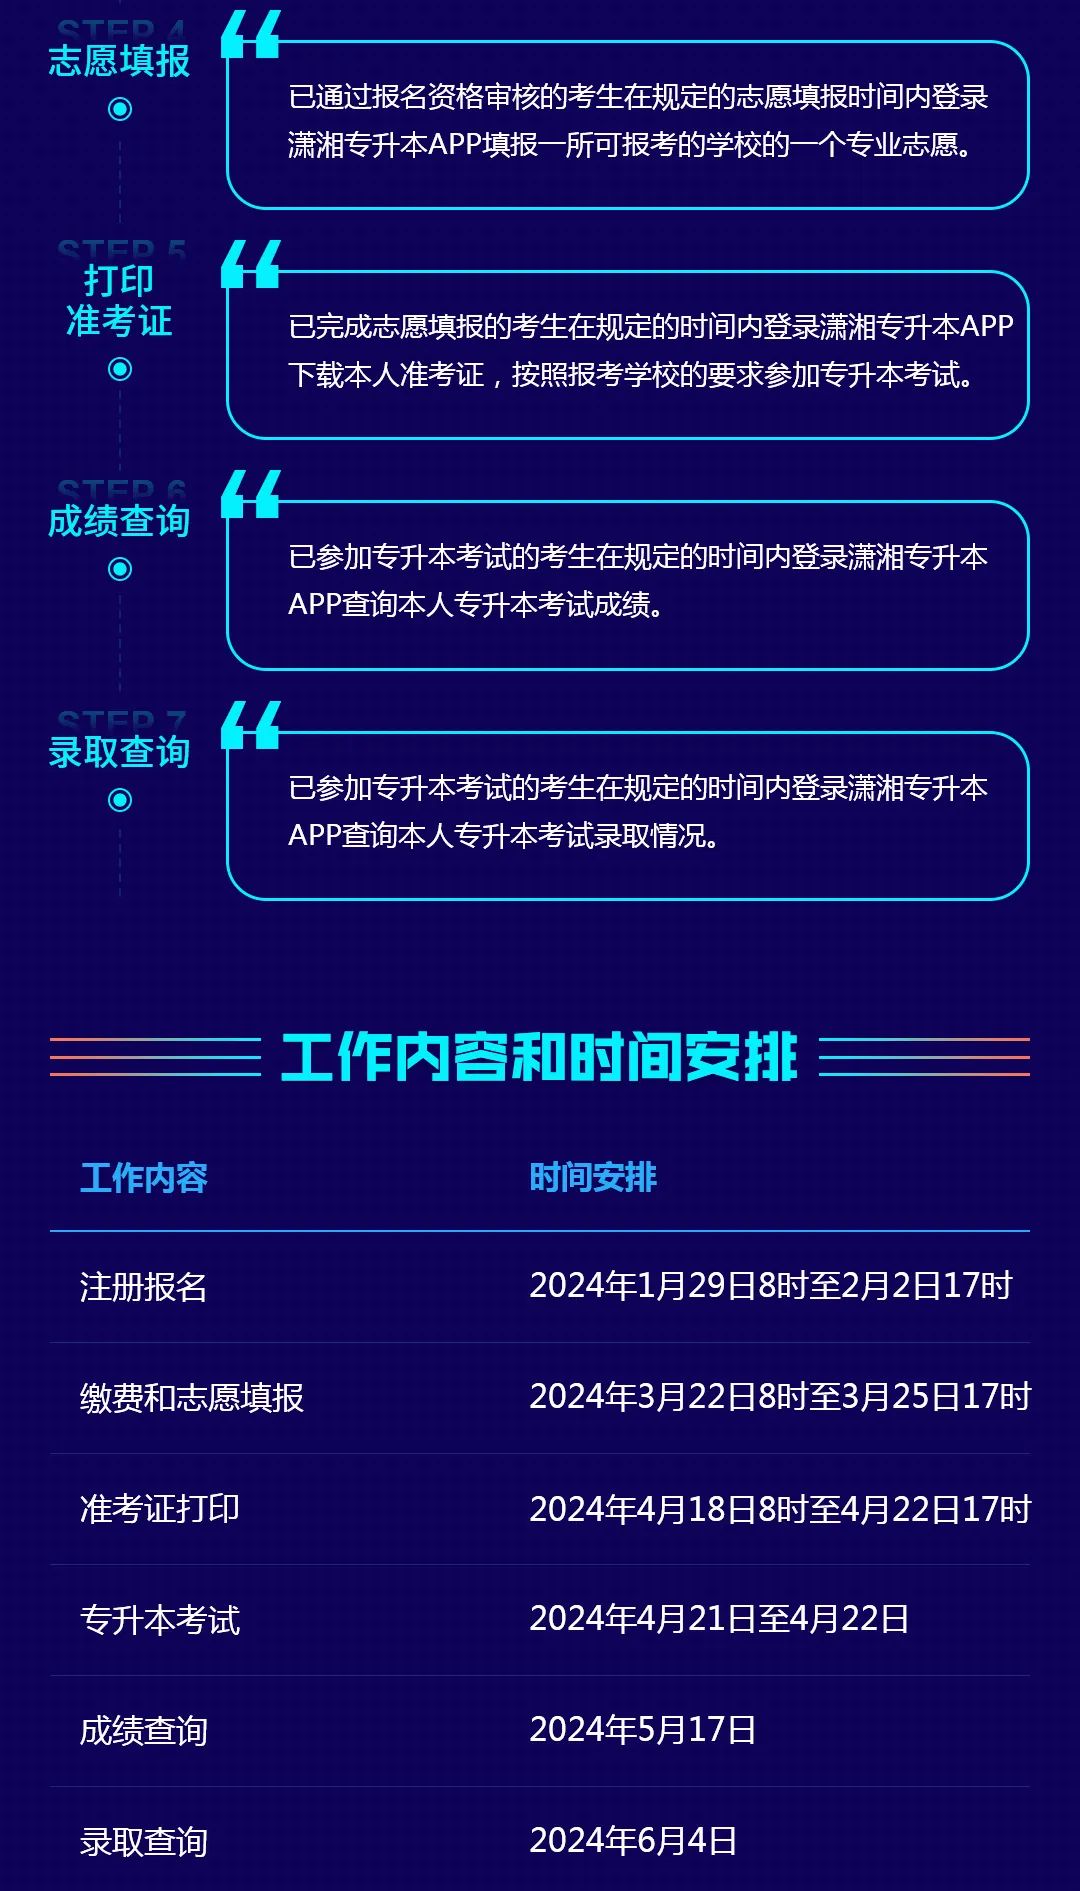 湖南省普通高等学校专升本信息管理平台系统操作指南(考生PC端)